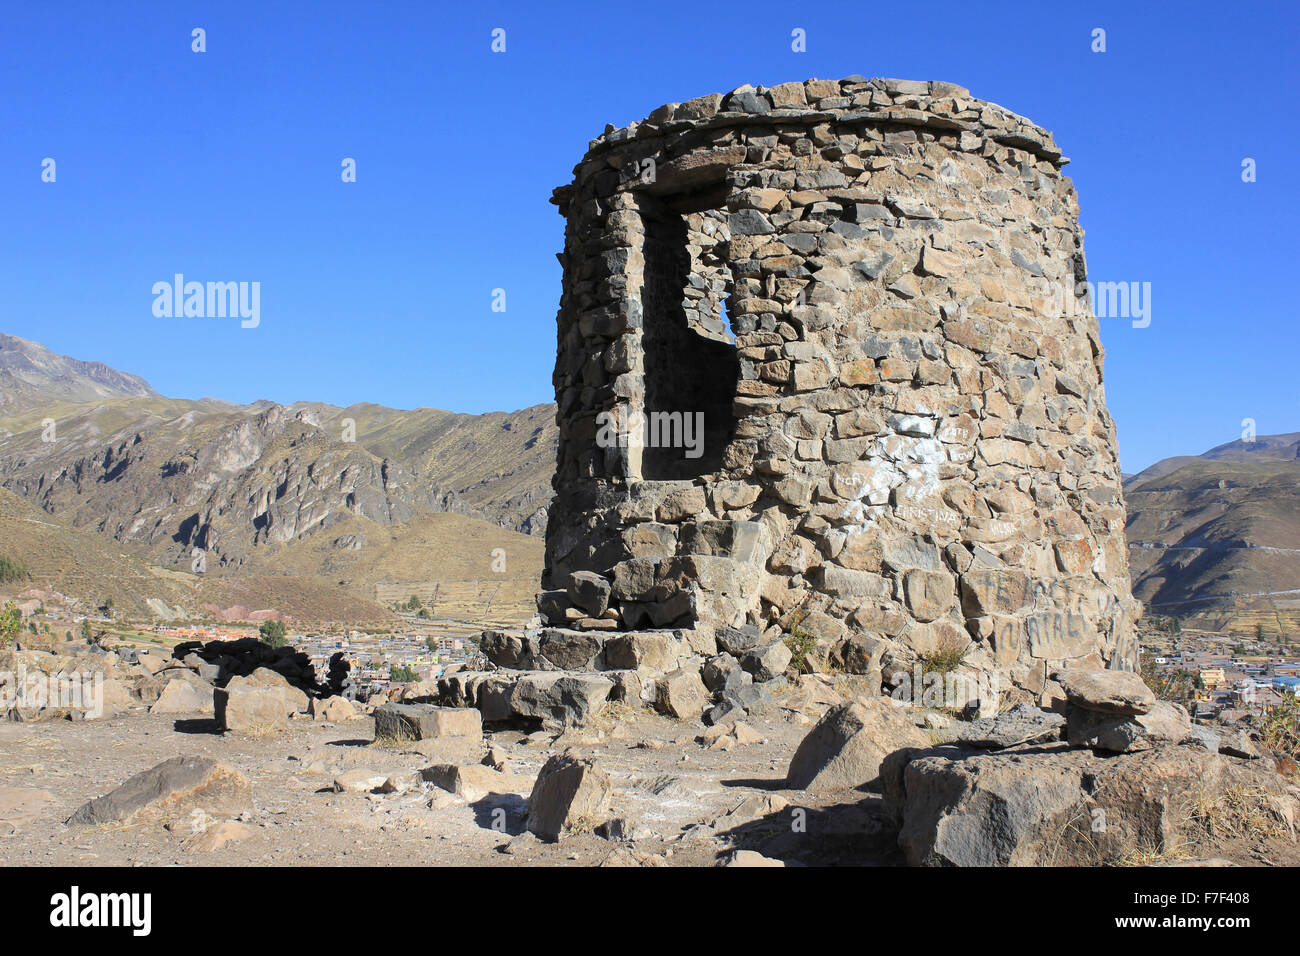 Atalaya de piedra con vistas del pueblo de Chivay, Perú Foto de stock